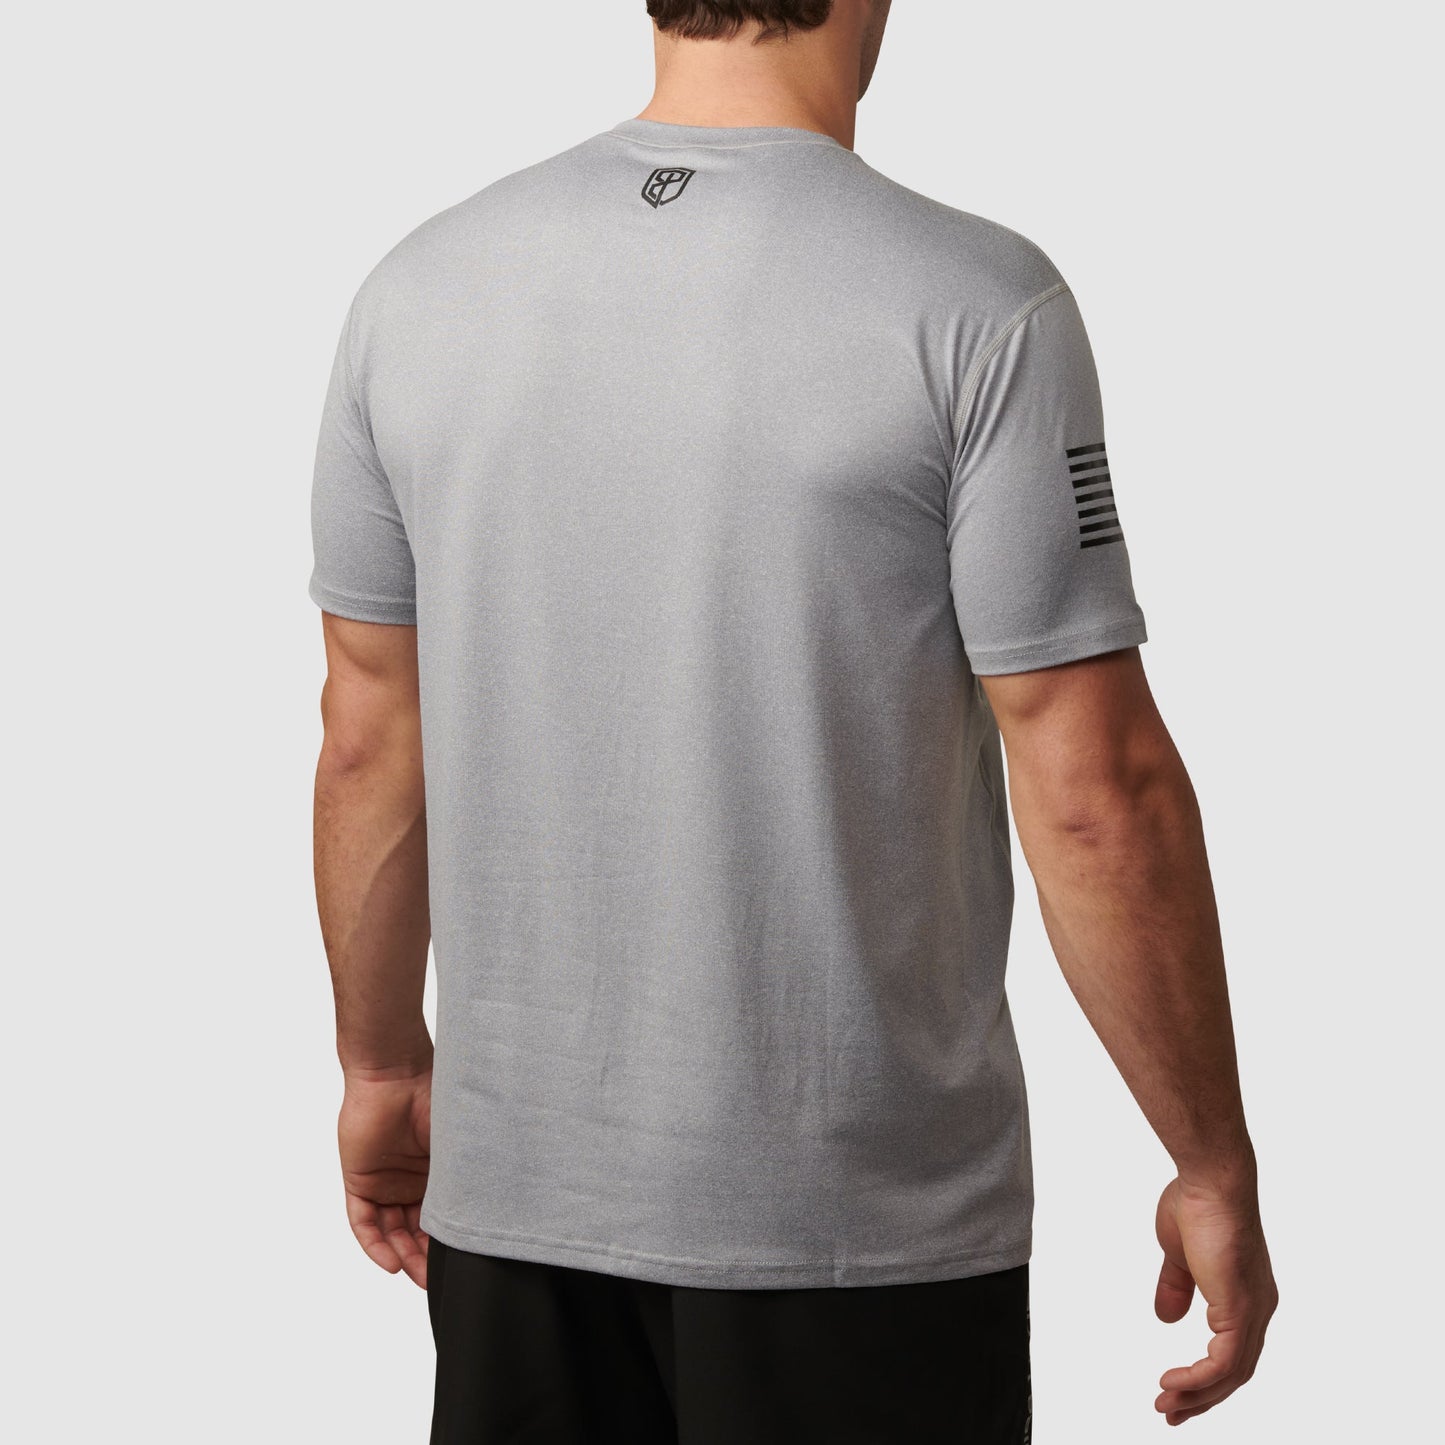 Range Shirt (Grey-Flag)